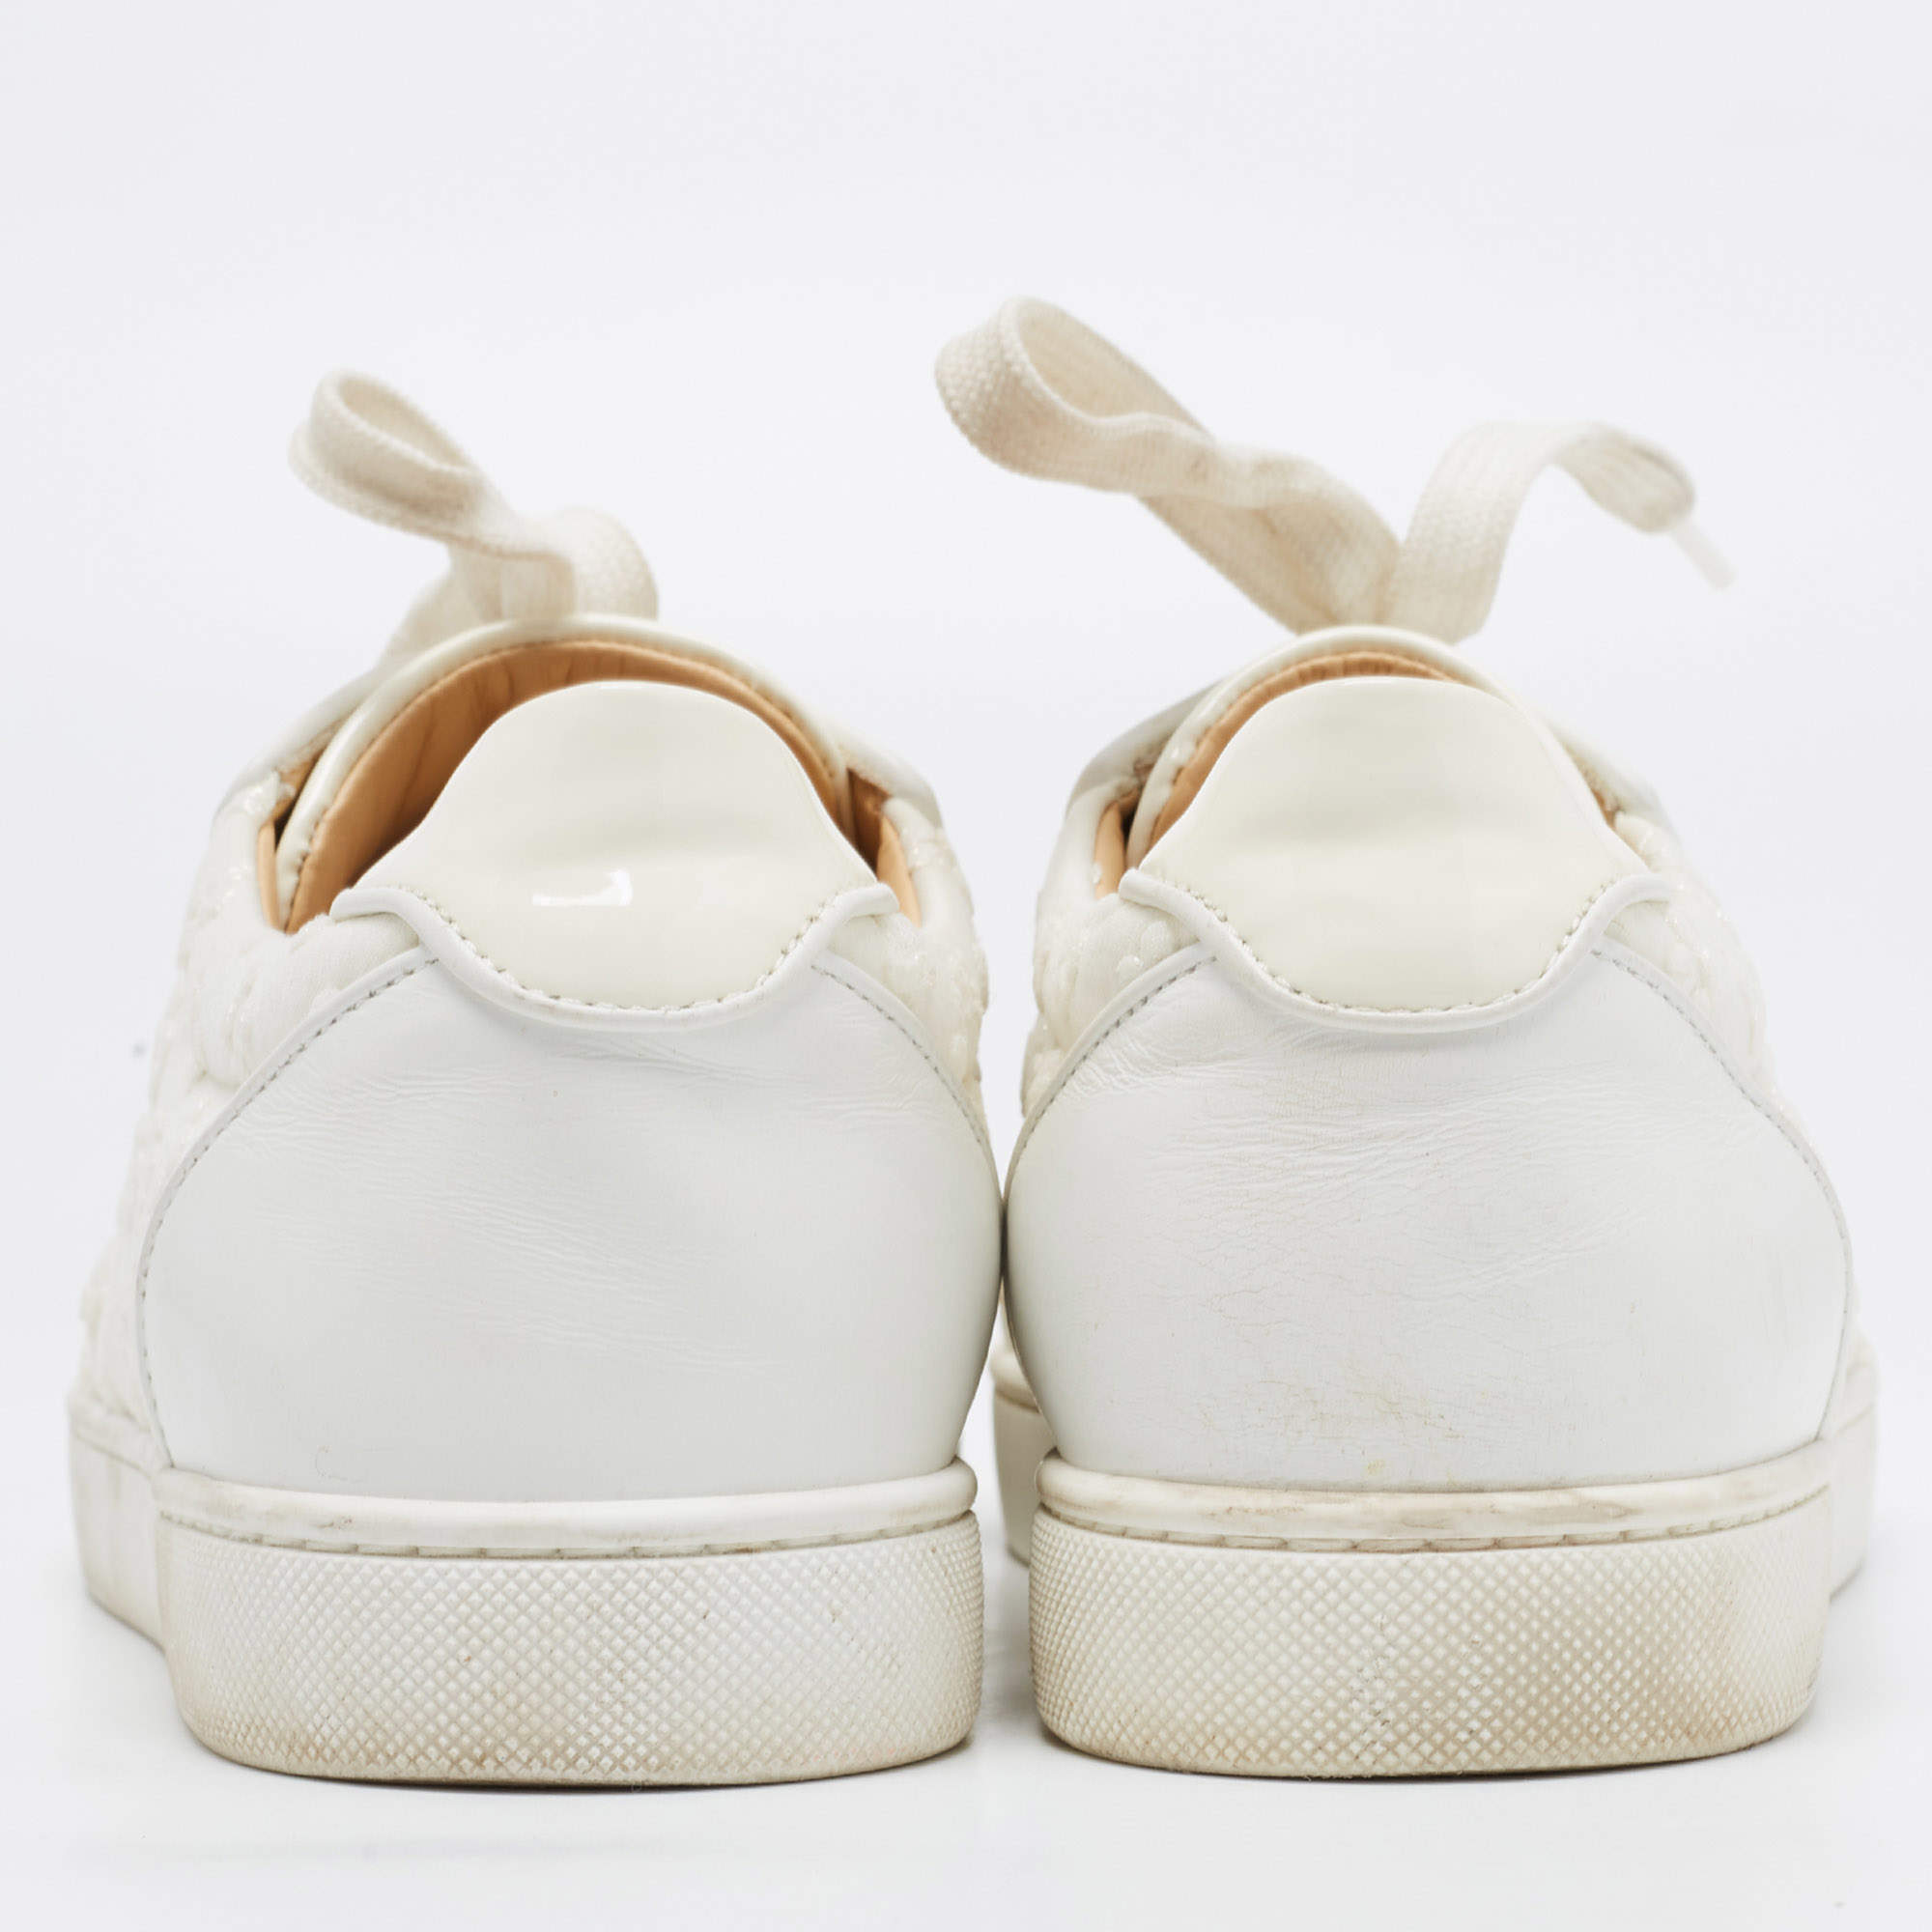 Christian Louboutin Vieira Leather Sneakers - White - 40